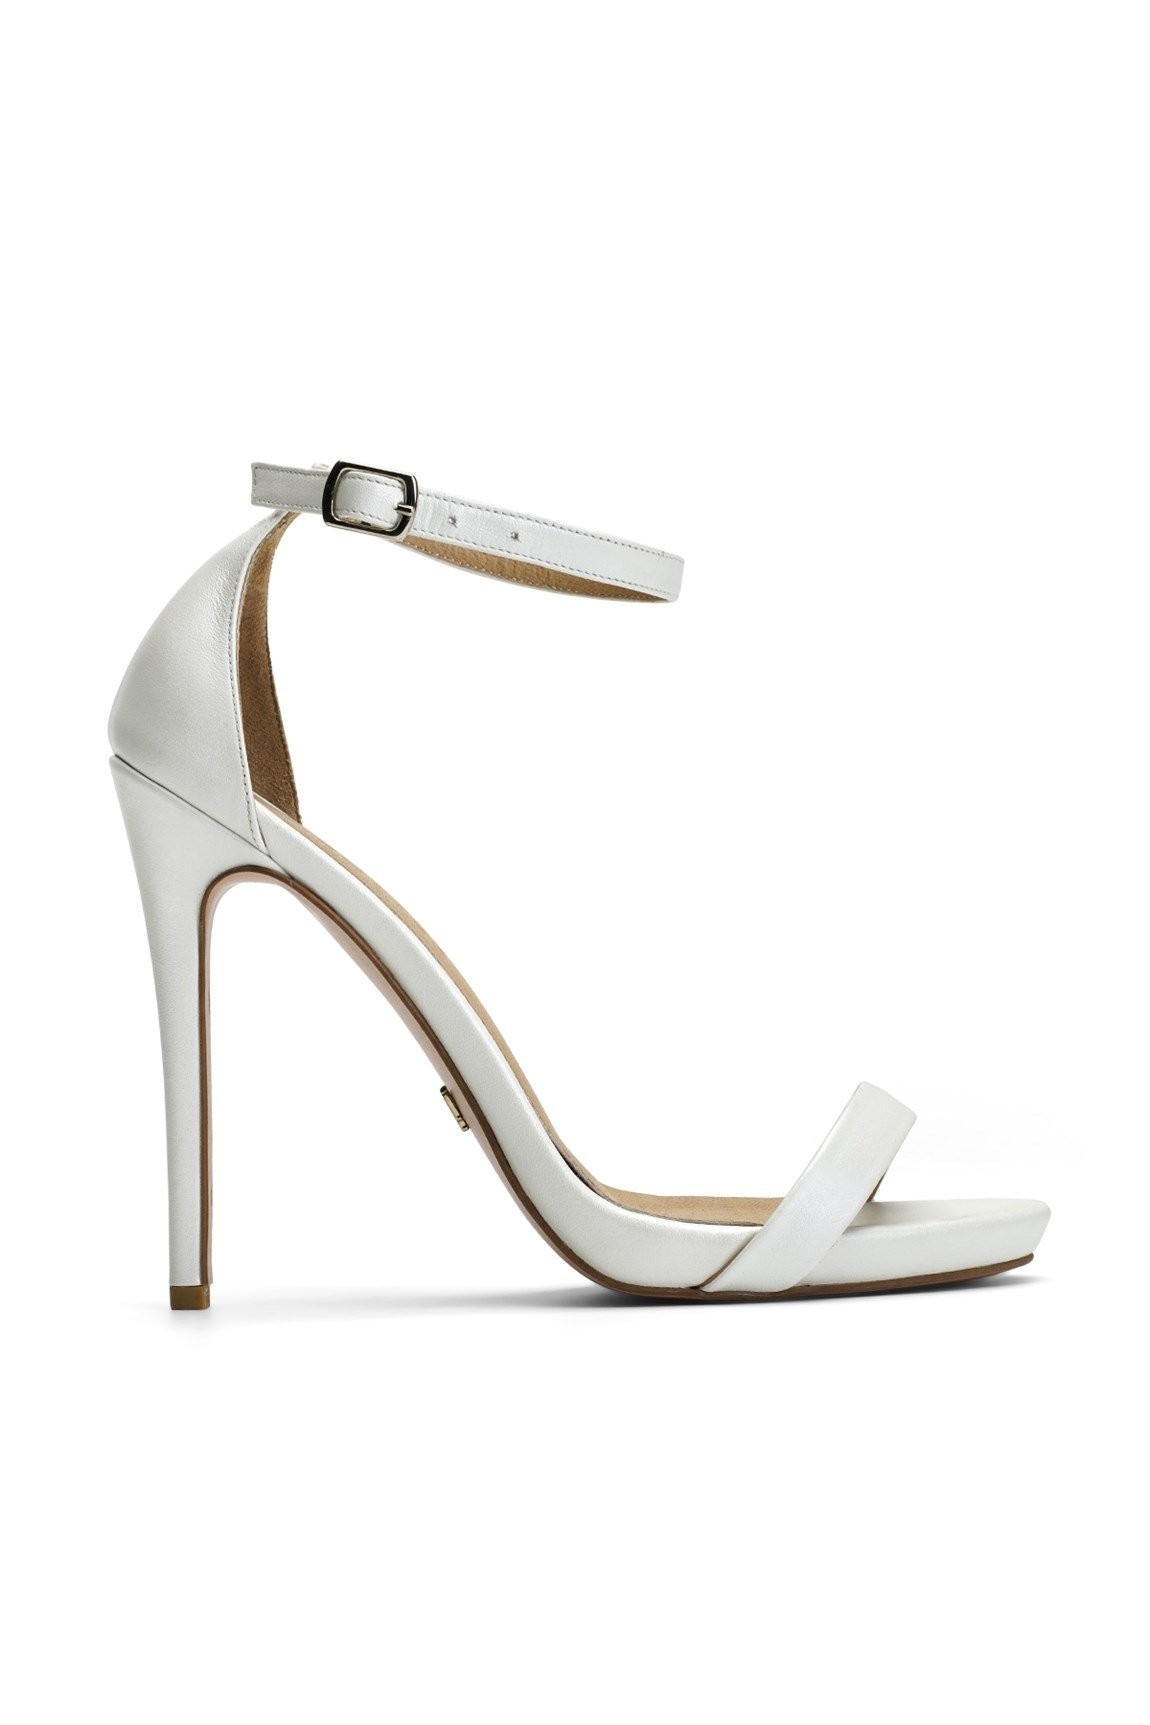 Jabotter Elegant Pearlescent White Heels 12cm